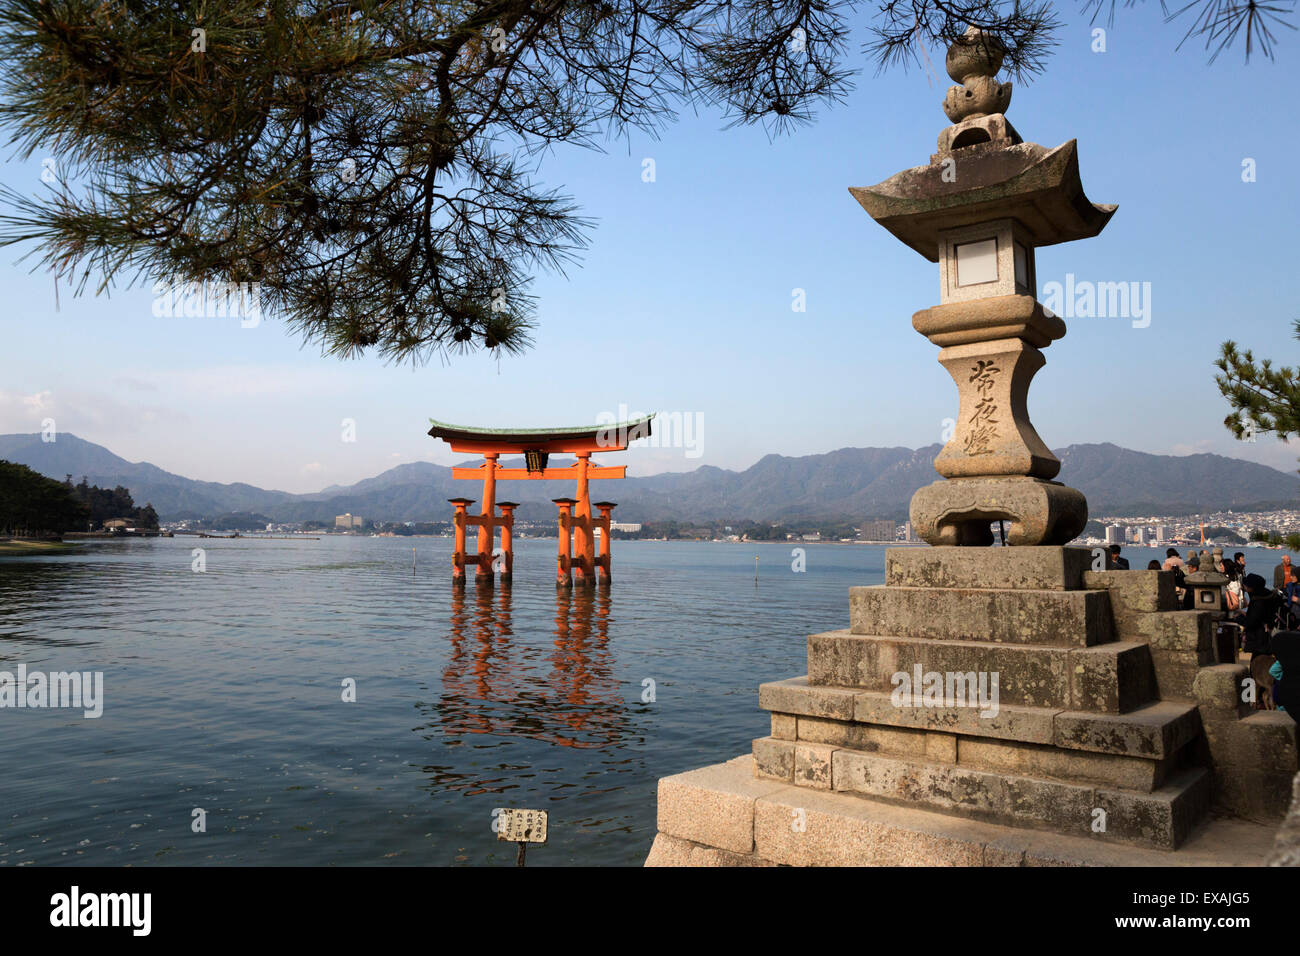 Le Miyajima de torii flottant d'Itsukushima, Site du patrimoine mondial de l'UNESCO, l'île de Miyajima, dans l'ouest de Honshu, Japon, Asie Banque D'Images